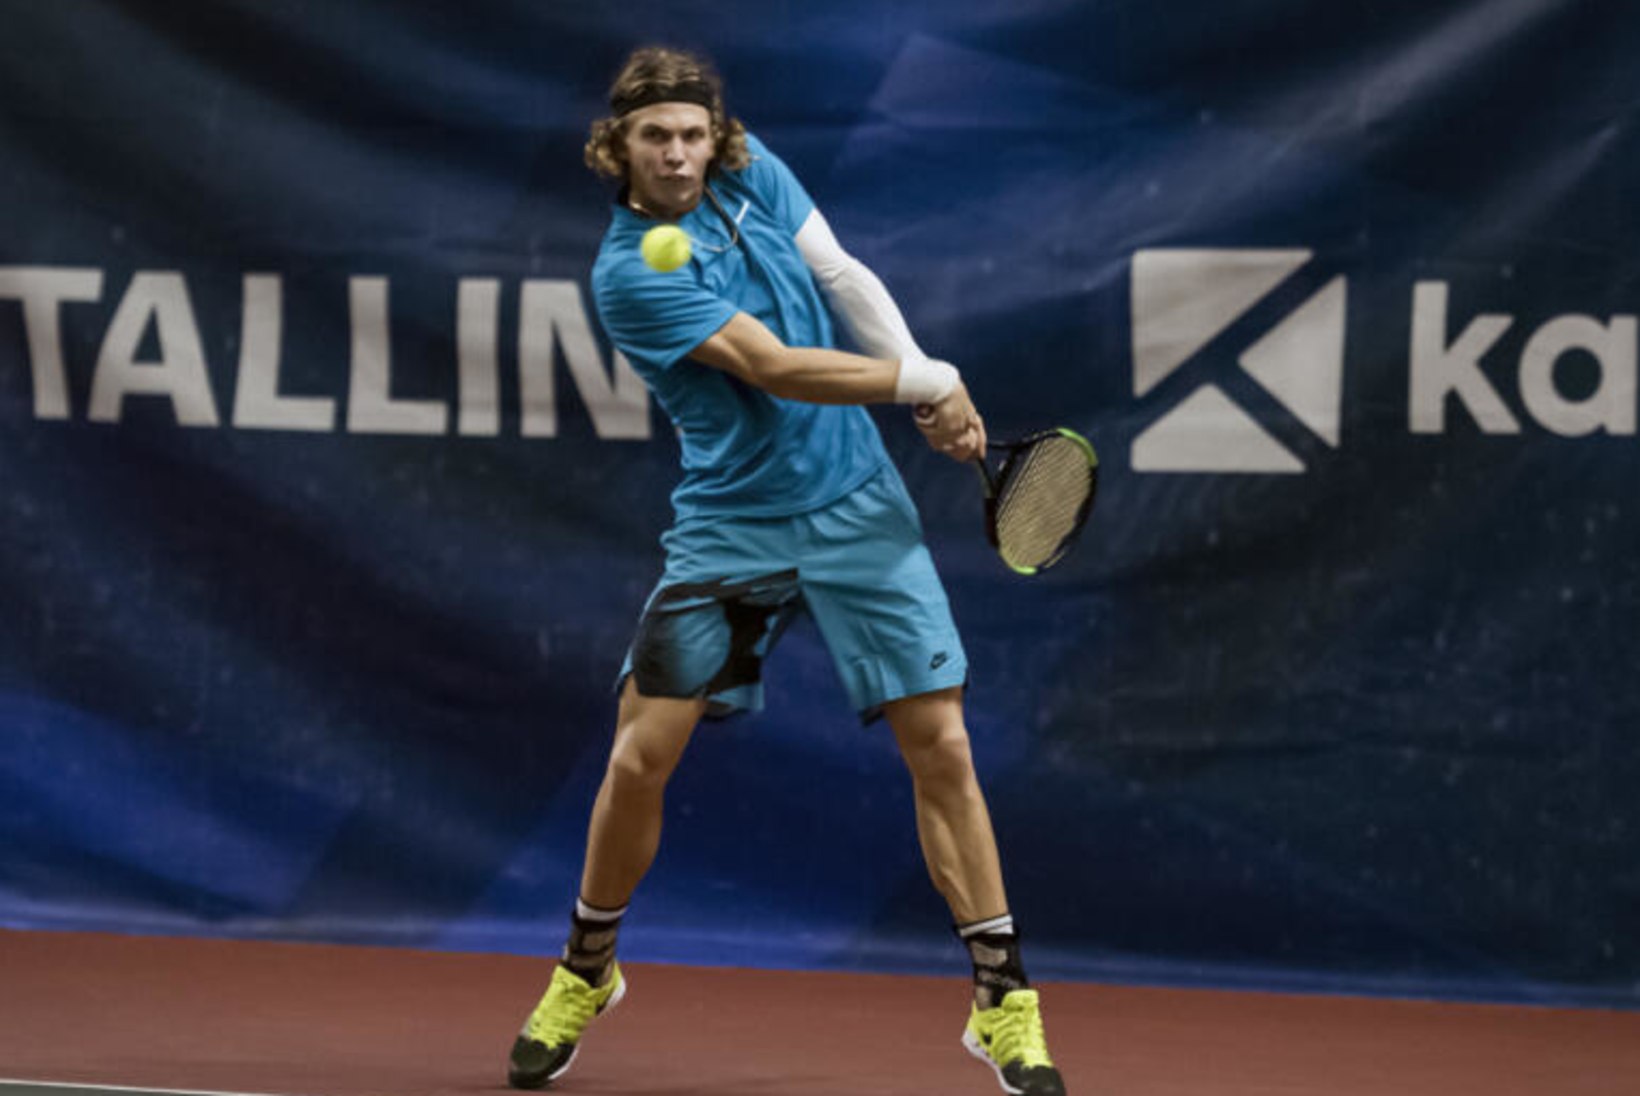 Karjääri teise ITF-turniiri võitnud Kristjan Tamm: Eesti esinumbri tiitel pole eesmärk omaette